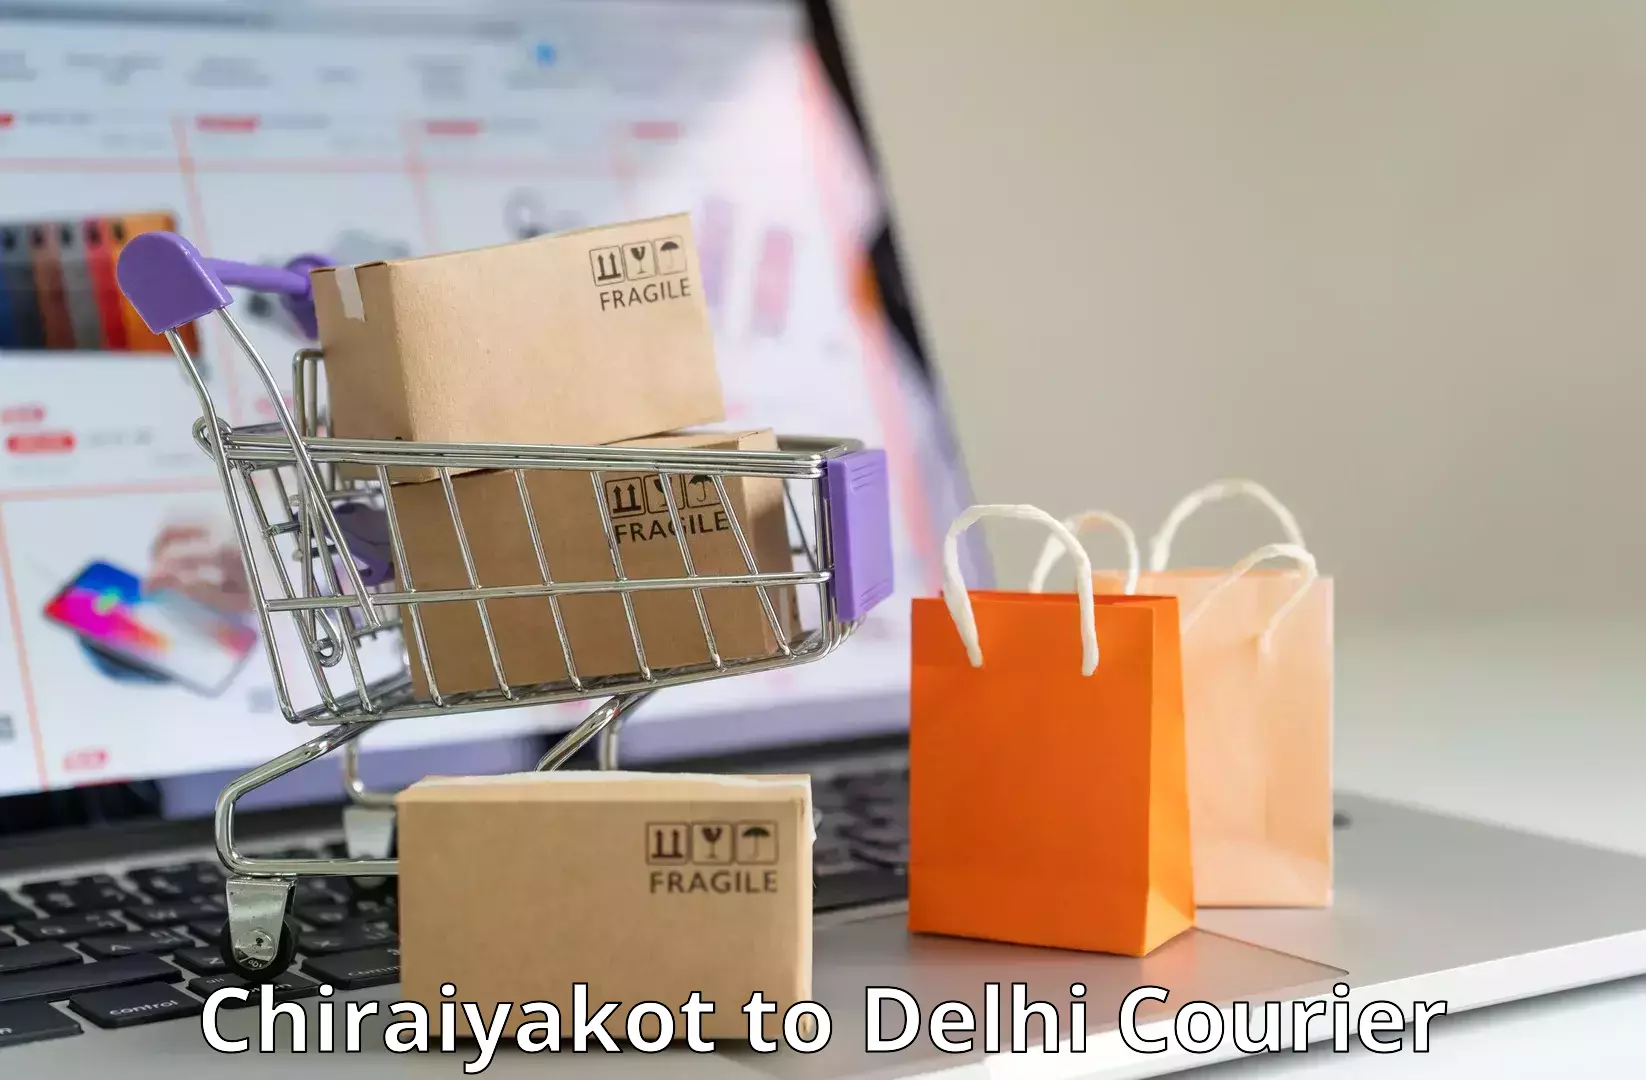 Online package tracking Chiraiyakot to Jawaharlal Nehru University New Delhi